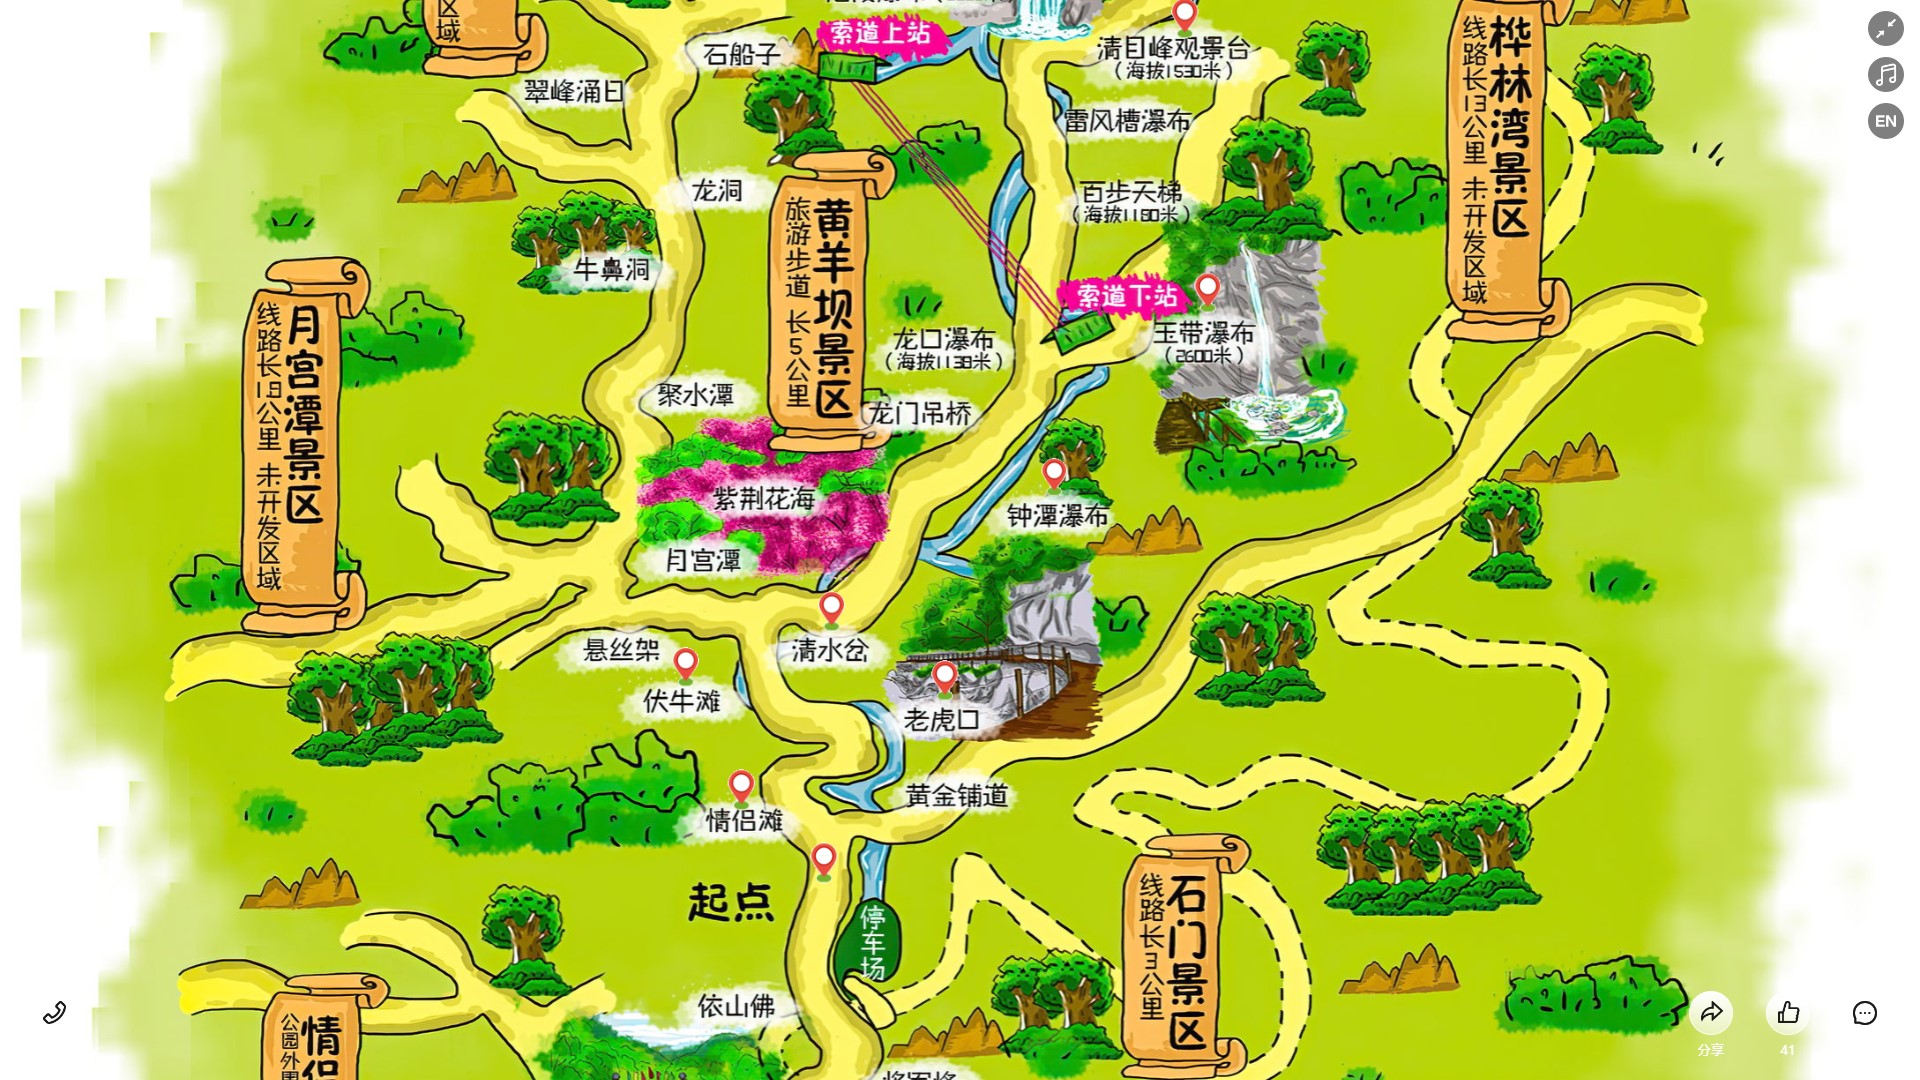 芦山景区导览系统